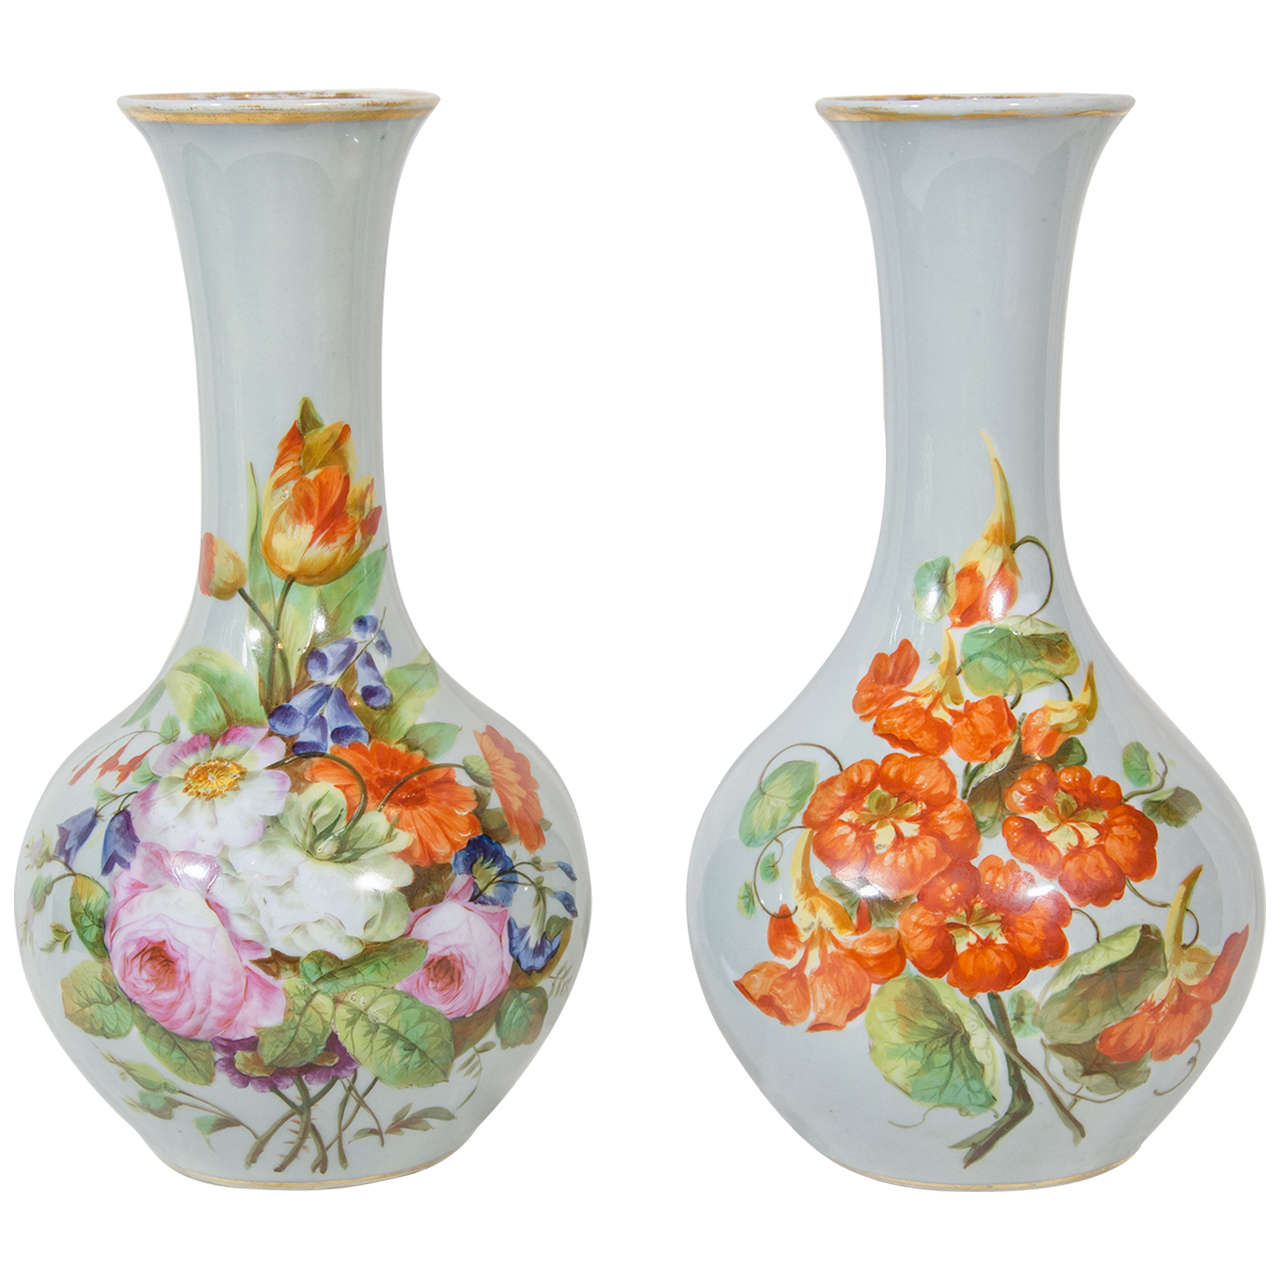 Paire de vases français en opaline peints à la main représentant des fleurs, circa 1870